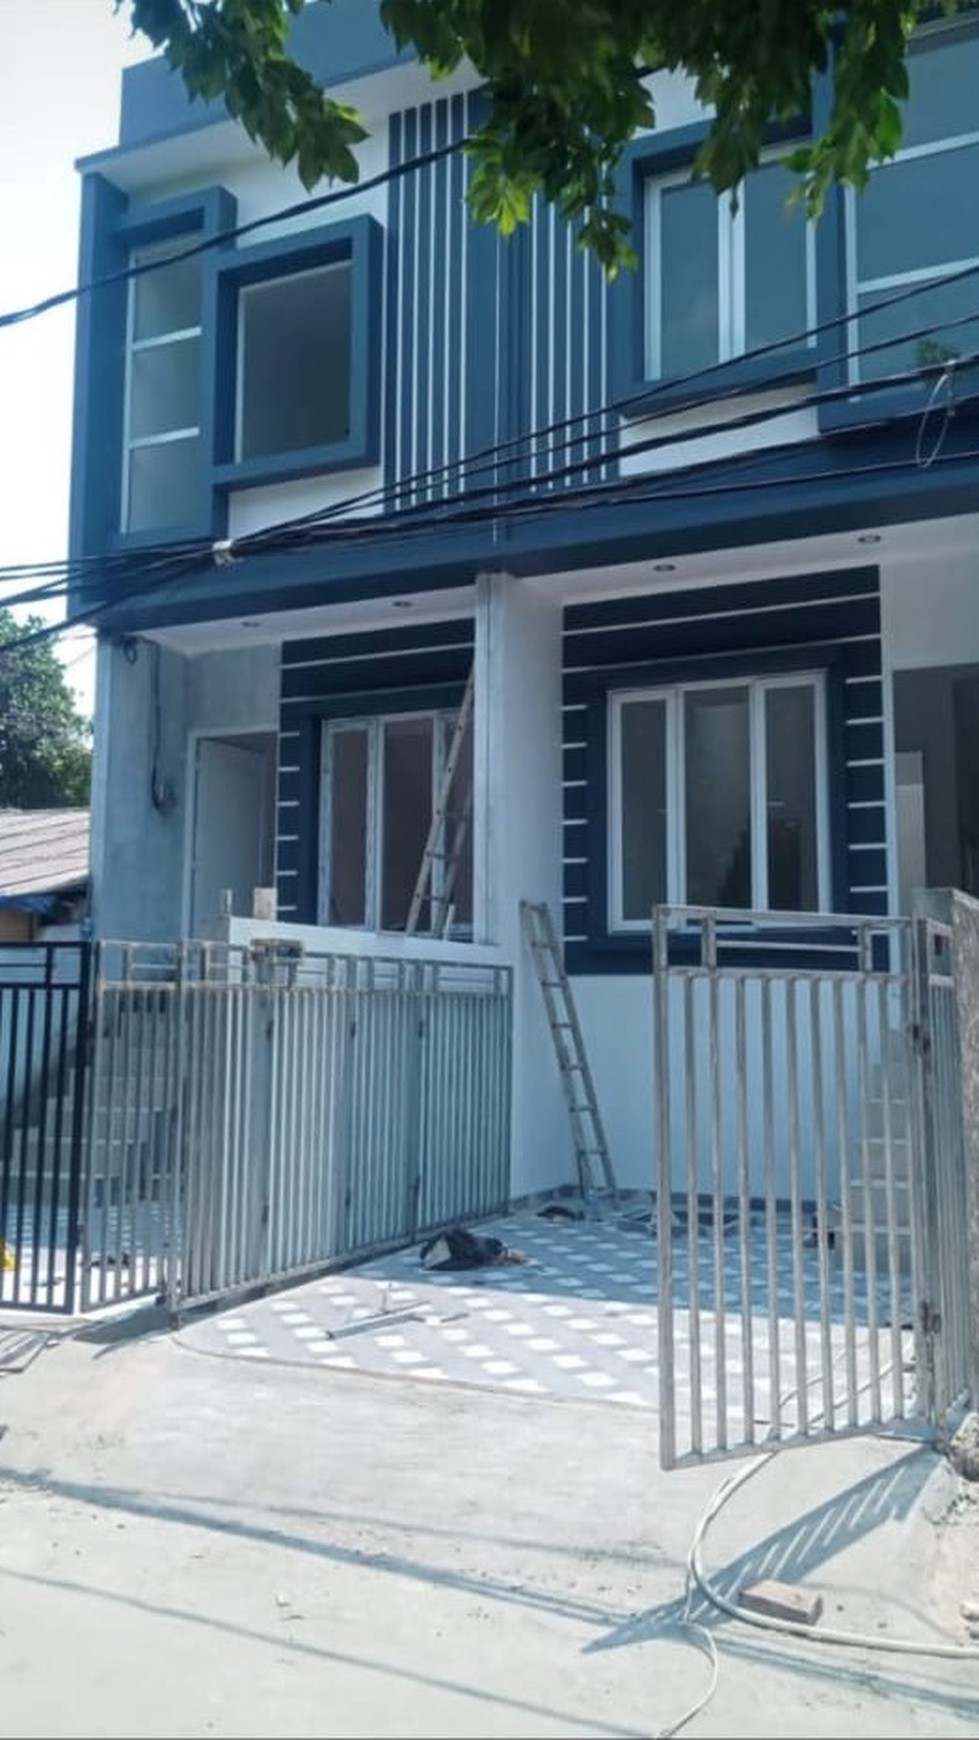 Dijual 2 unit Rumah Tinggal 2 lantai baru di kompleks Bea Cukai Sukapura kelapa Gading Jakarta Utara